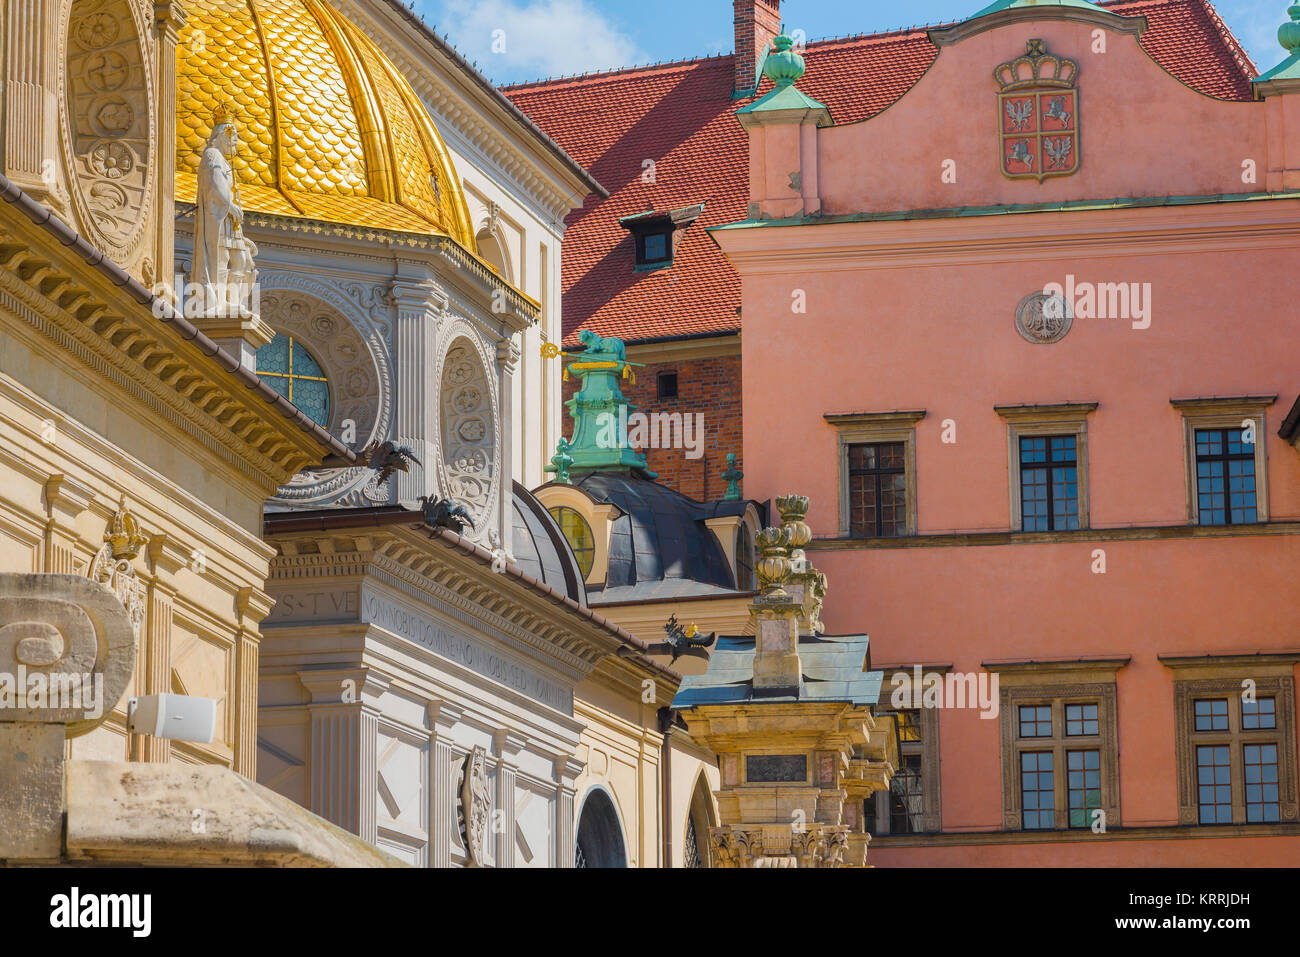 Wawel Cracovia, vista de detalle de la pared exterior sur de la catedral de Cracovia y los apartamentos adyacentes del Castillo Real de Wawel, Polonia. Foto de stock